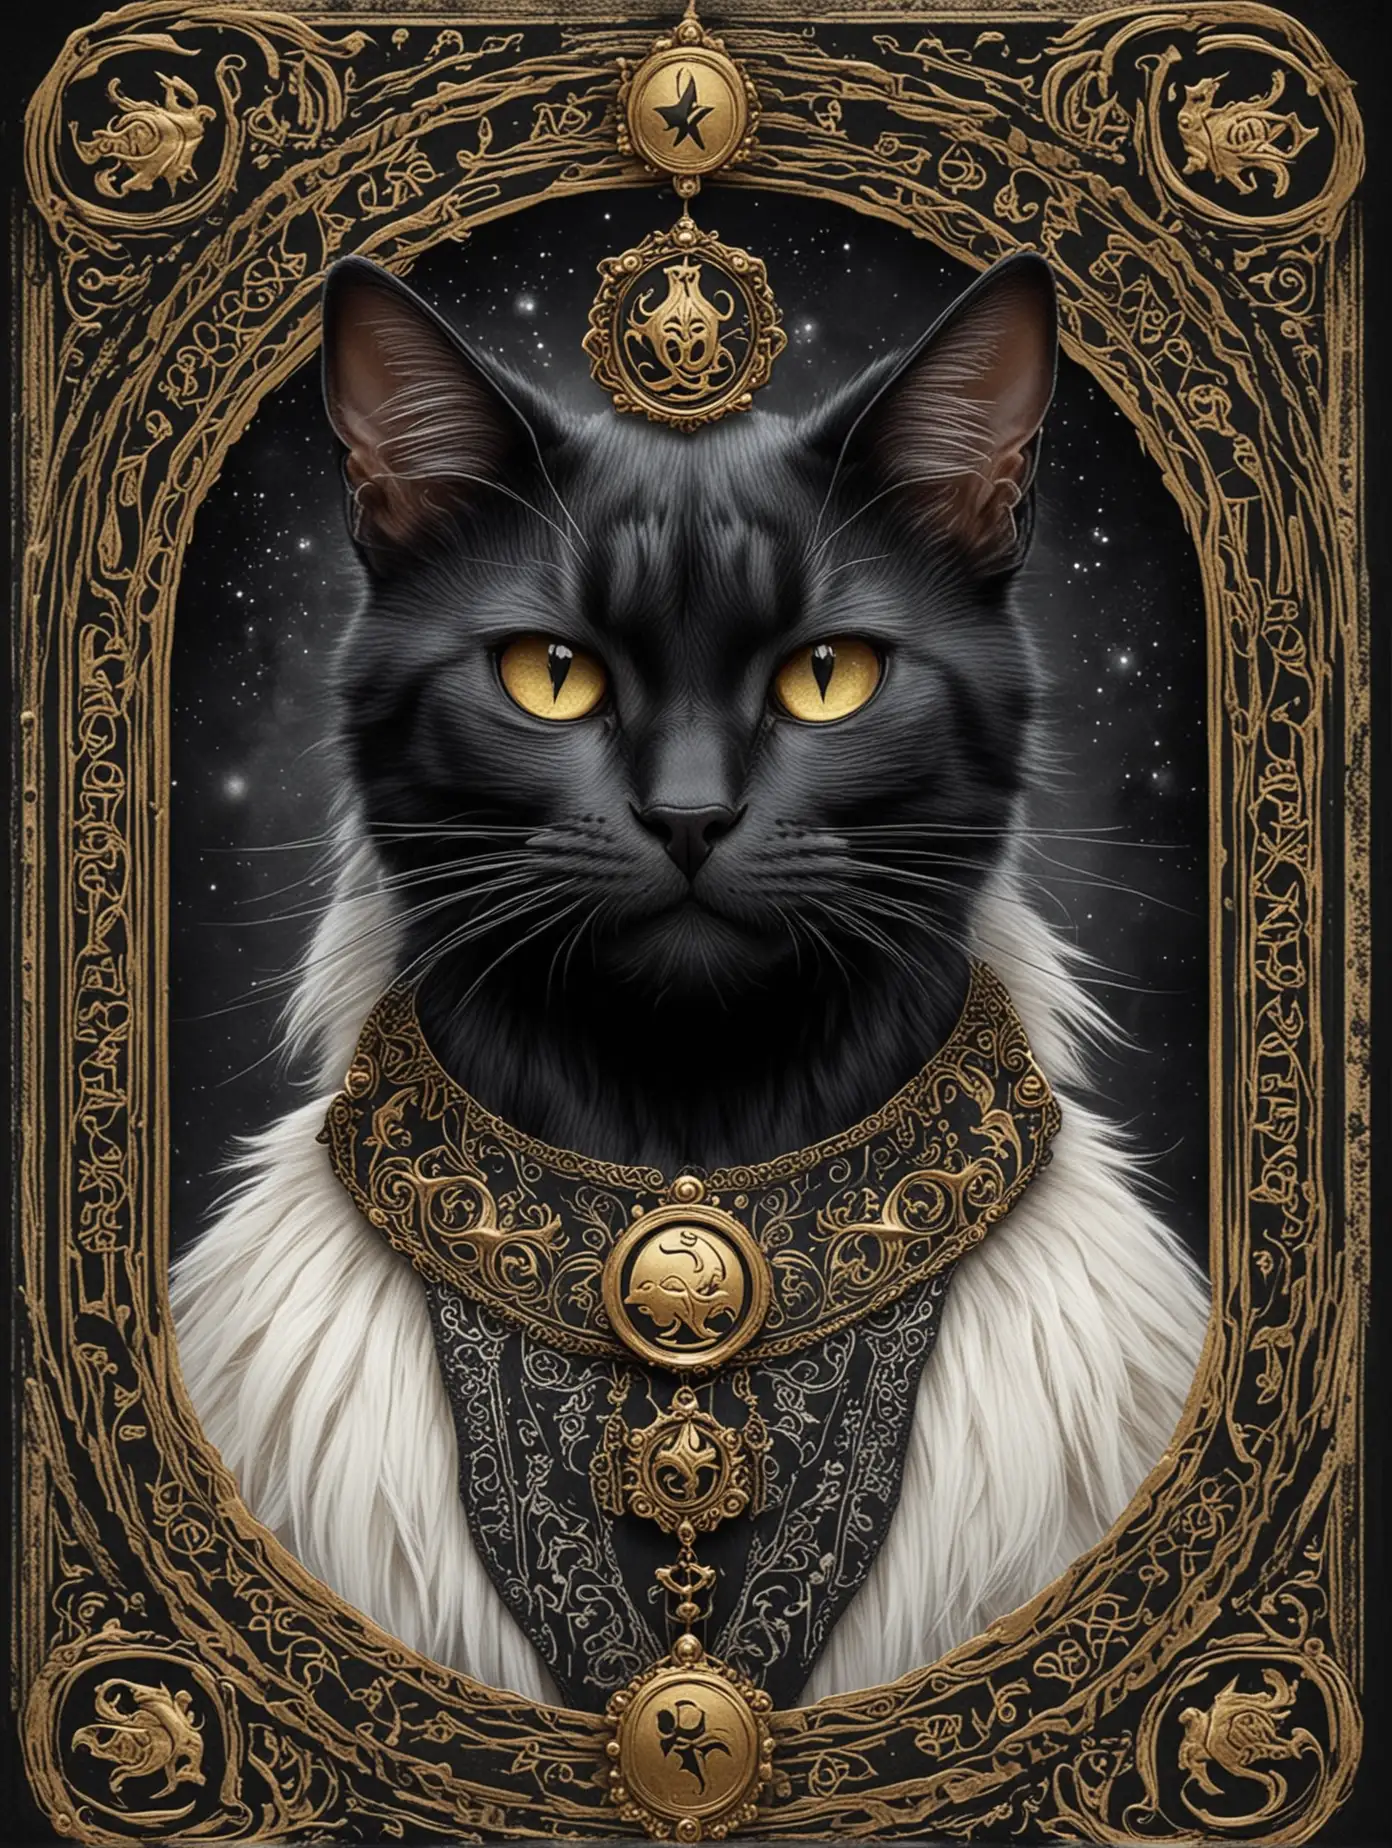 Выскокачественное изображение, мифического существа "Кот Баюн", в славянском стиле, на тему , в виде карты типа таро. Кот должен быть жутким, черный, и с хитрой ухмылкой. кот должен быть крупным